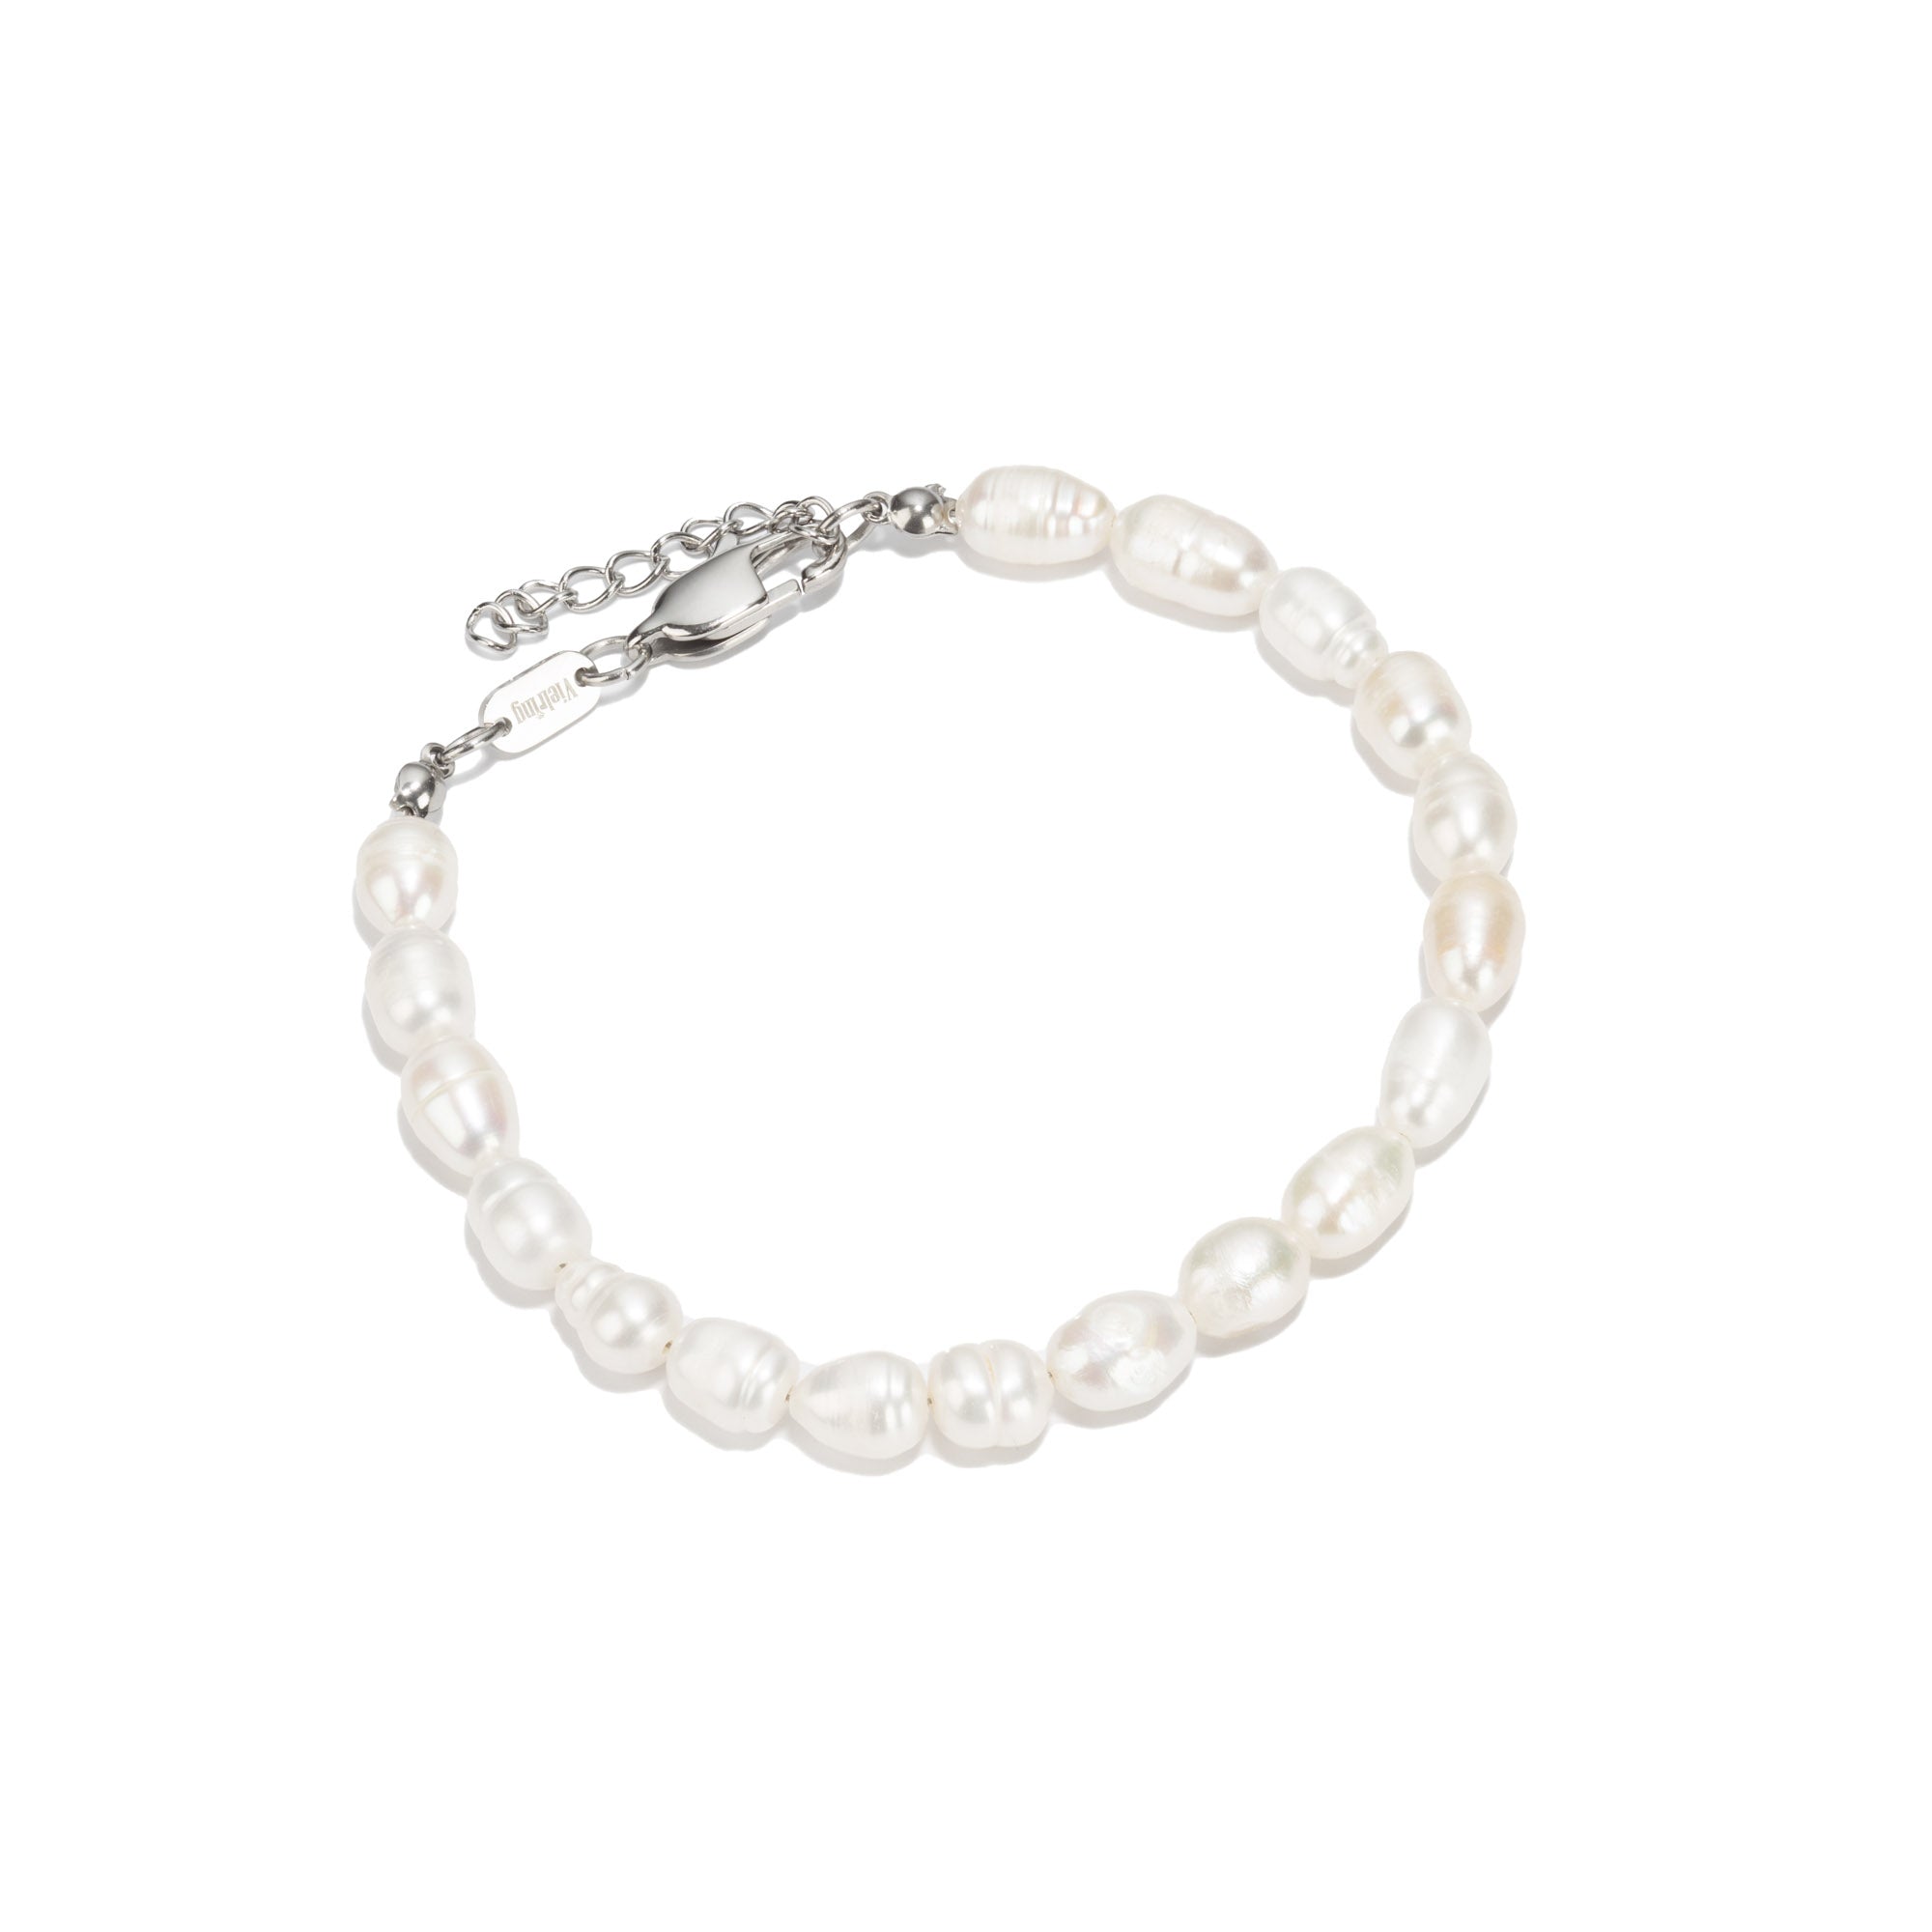 Freshwater pearl bracelet adjustable - oval